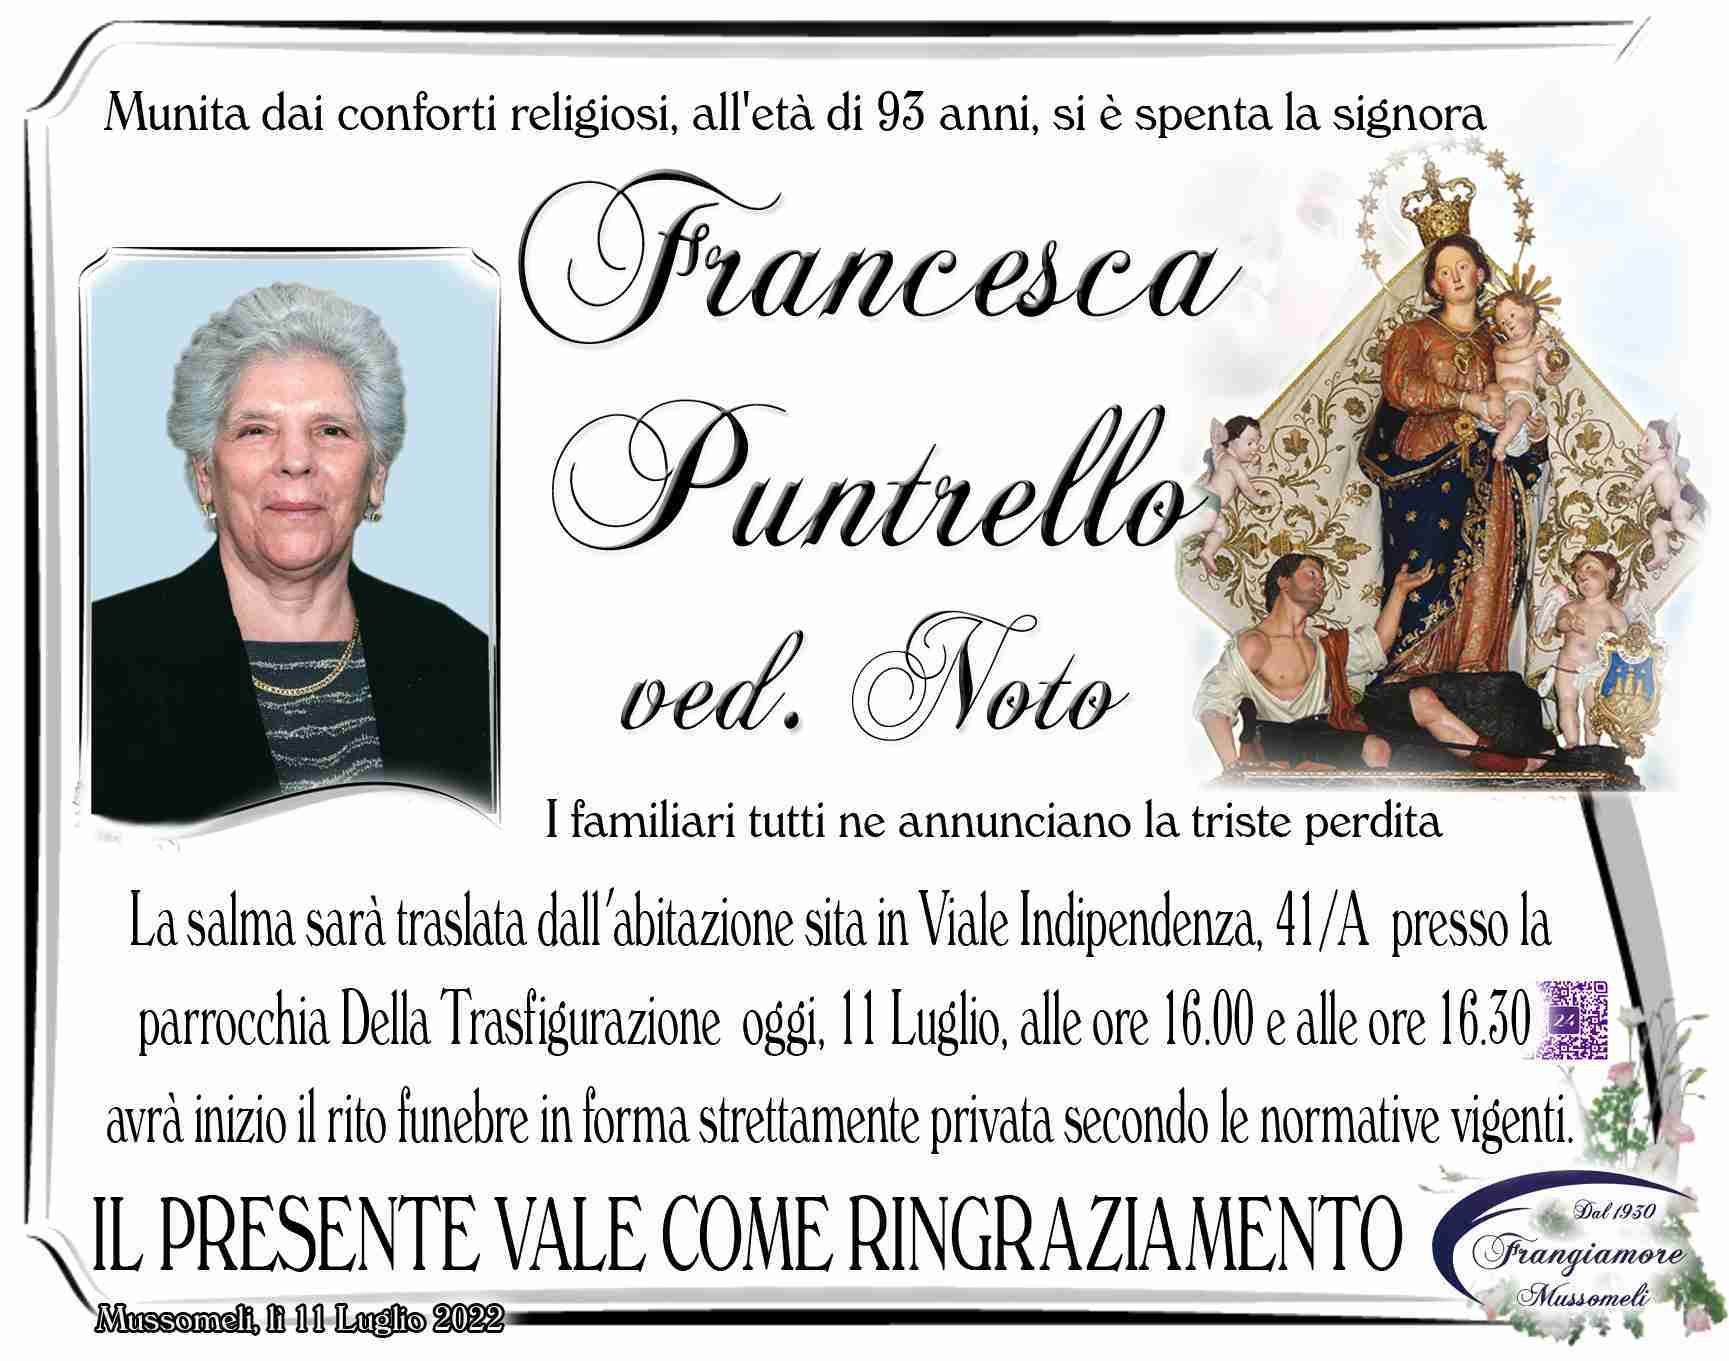 Francesca Puntrello